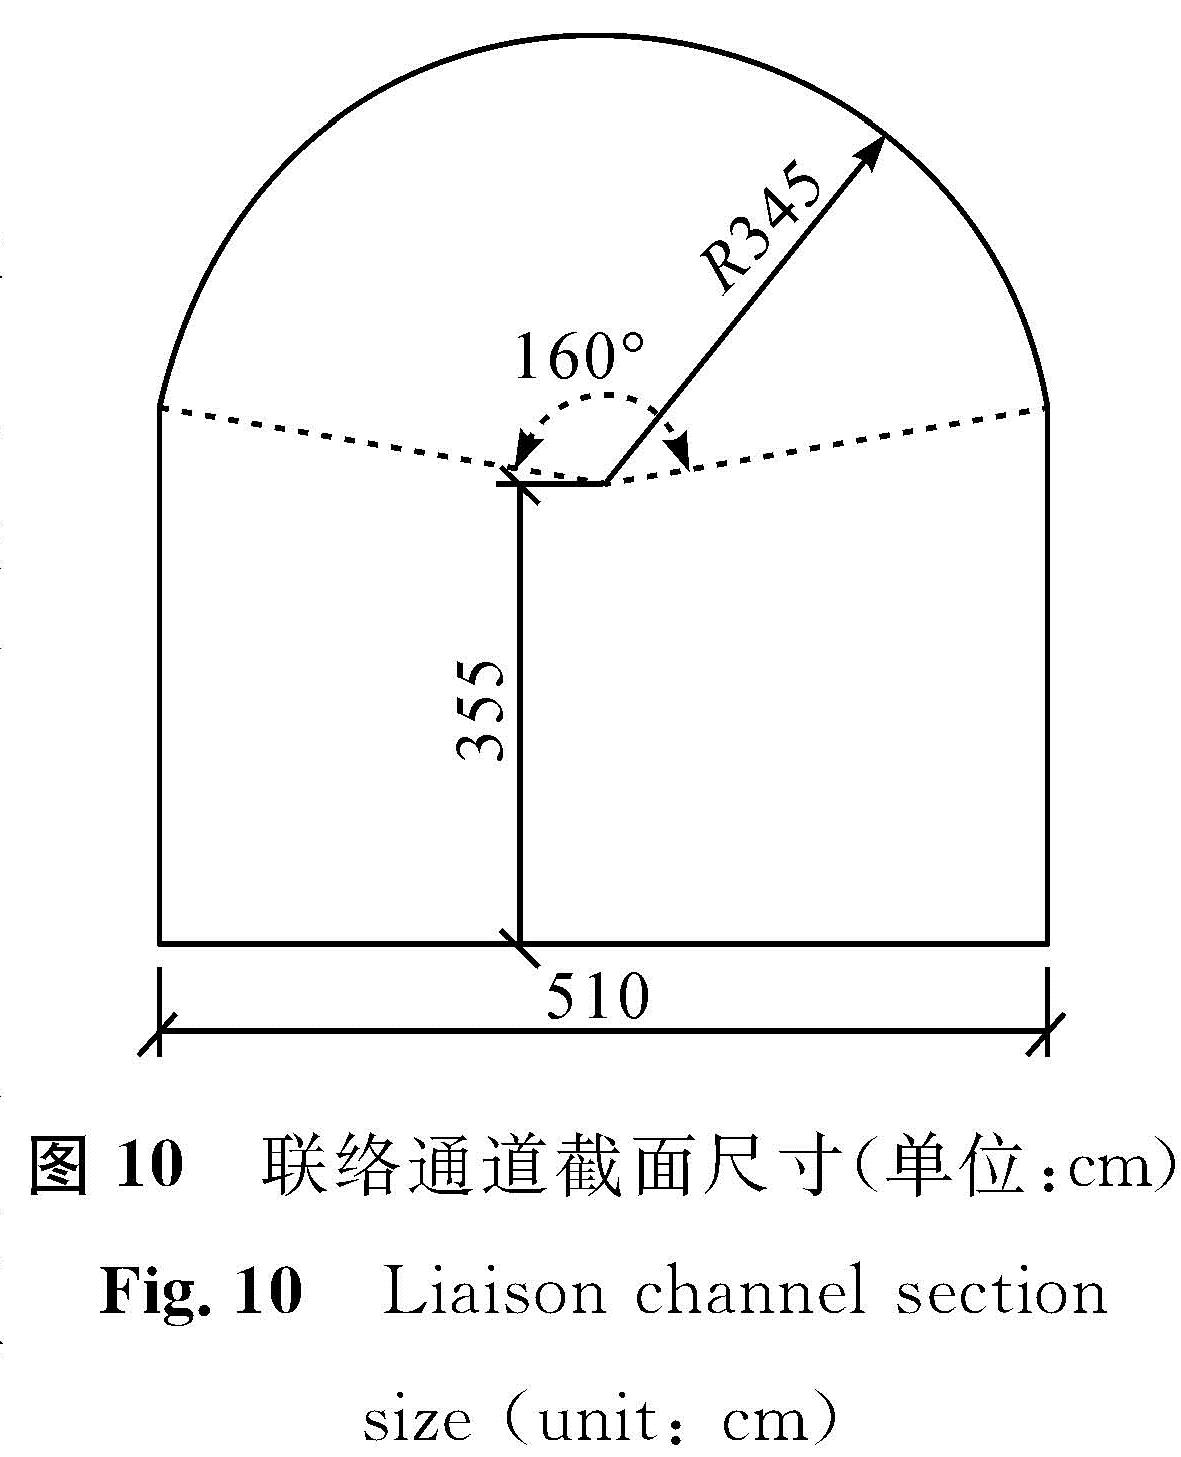 图 10 联络通道截面尺寸(单位:cm)<br/>Fig.10 Liaison channel section size(unit: cm)